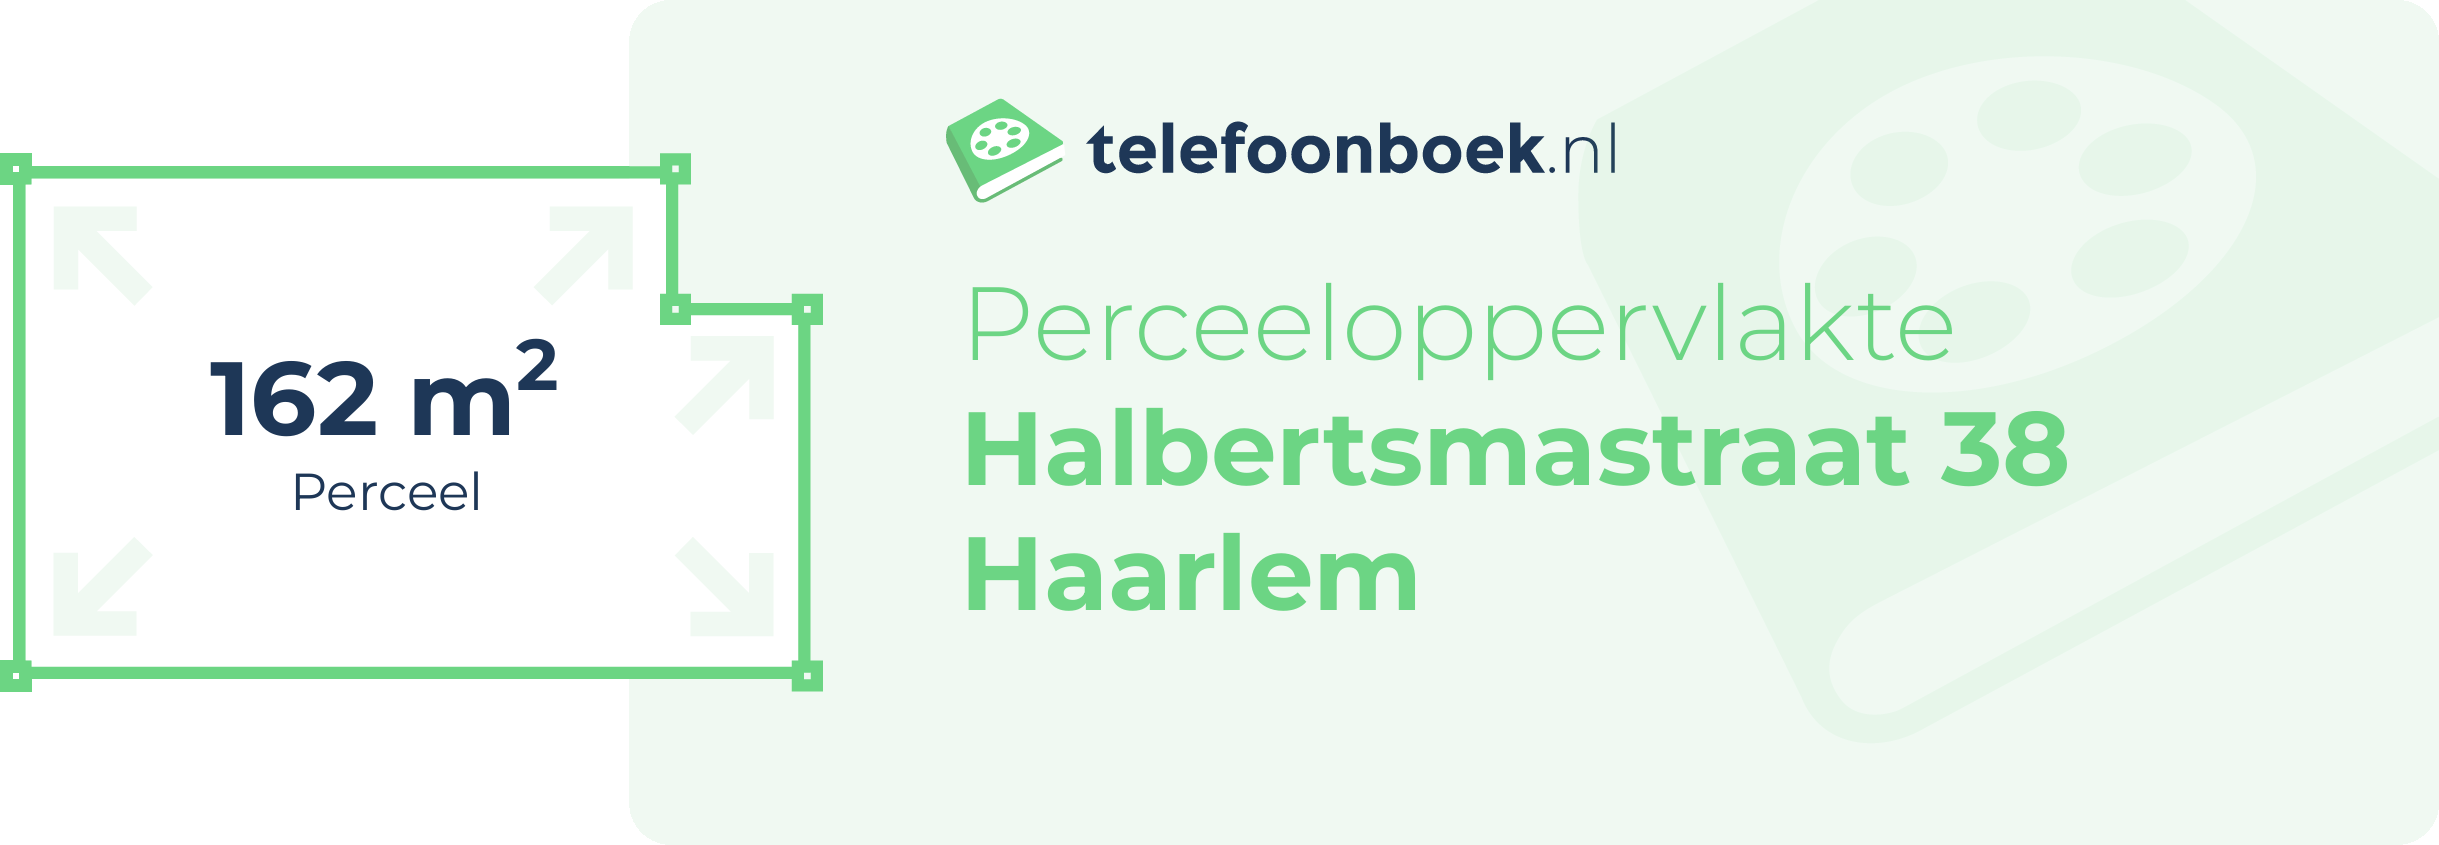 Perceeloppervlakte Halbertsmastraat 38 Haarlem